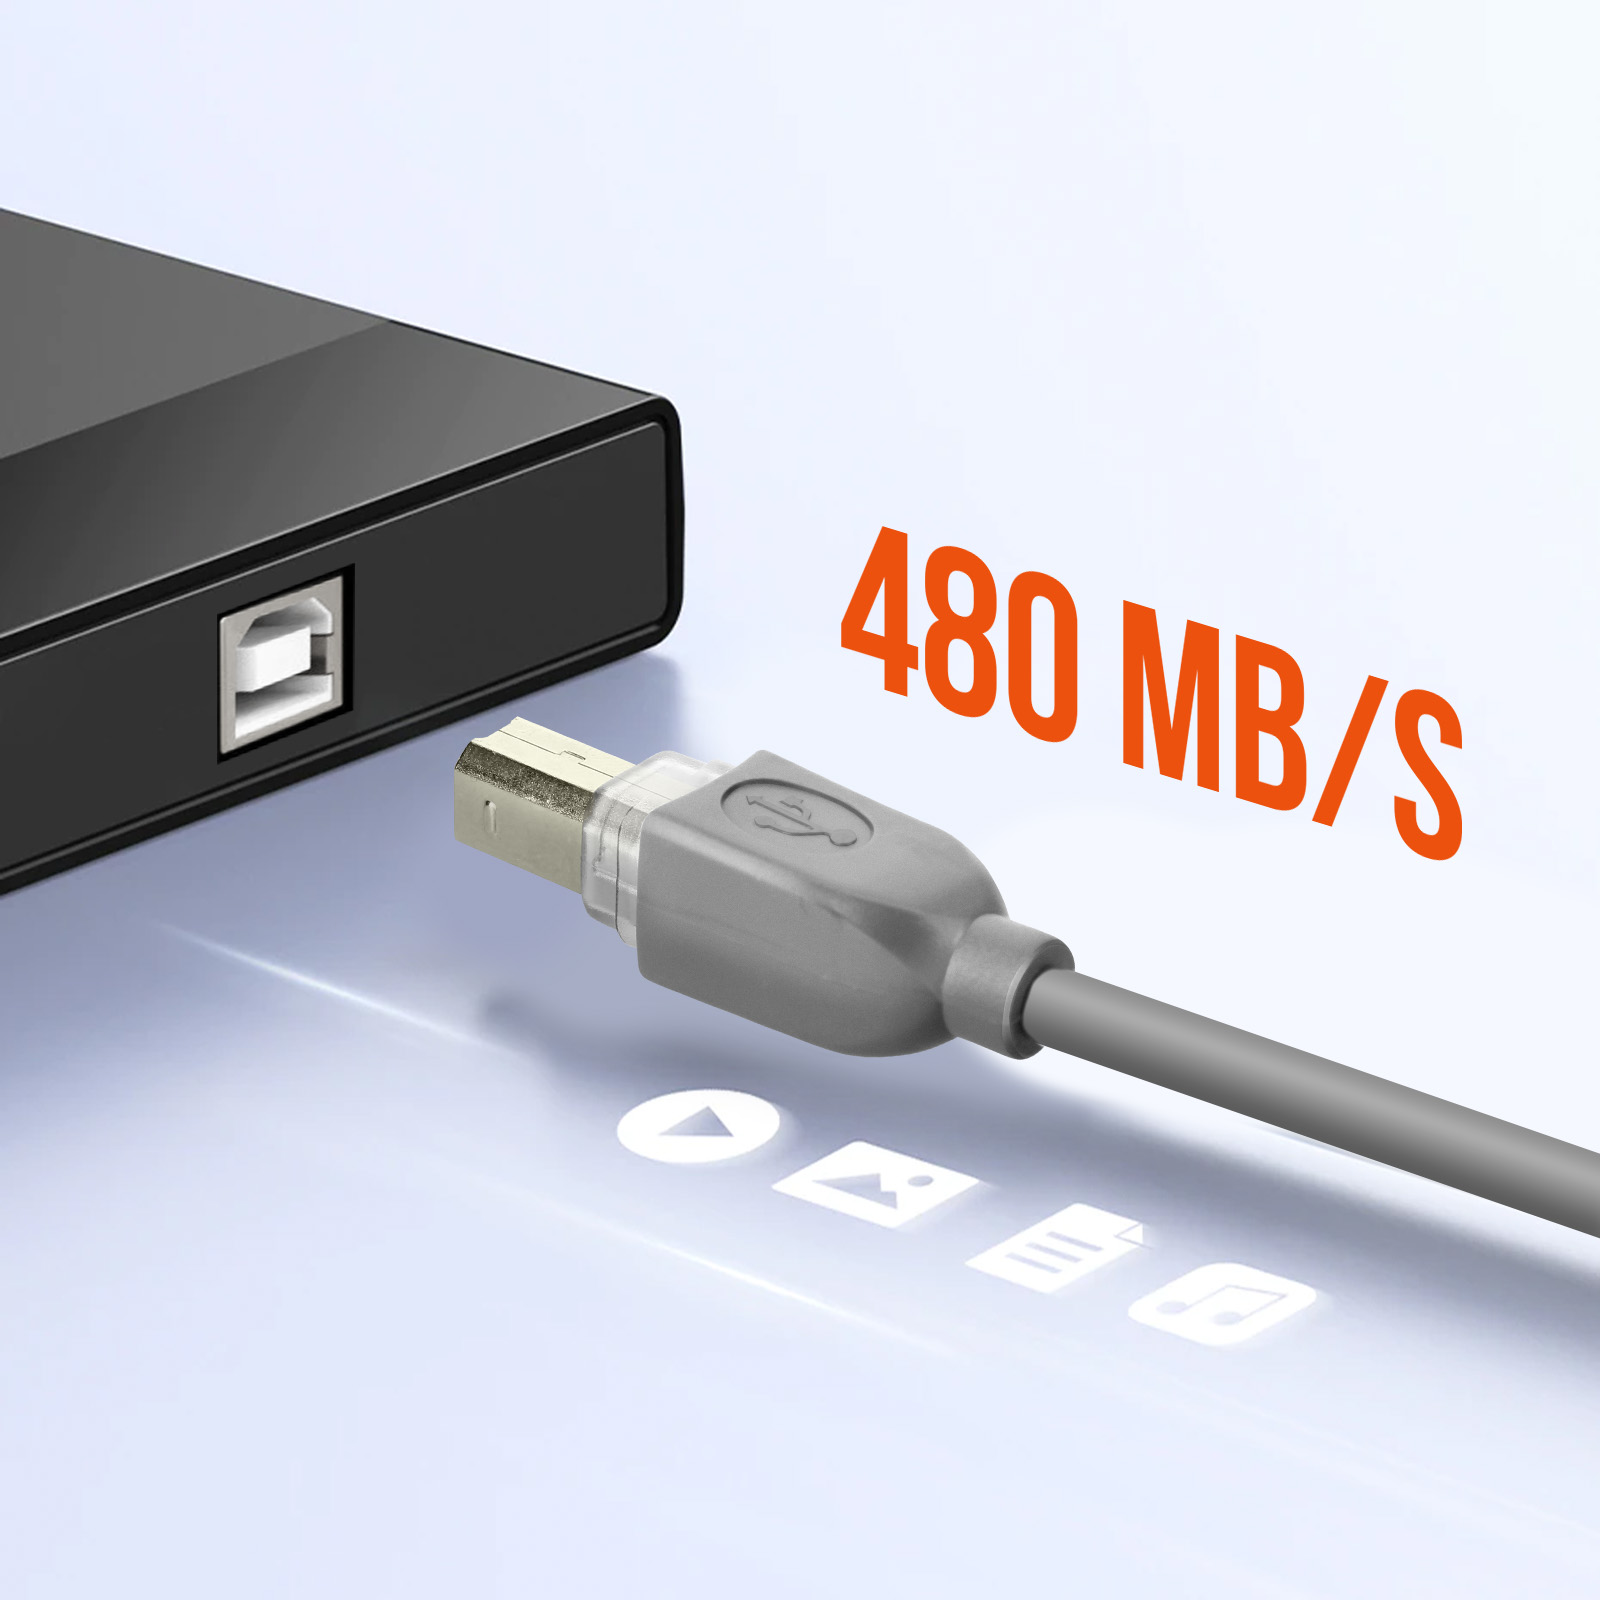 Connectique informatique Temium Câble imprimante USB 2.0 A vers USB B - 5M  - DARTY Réunion